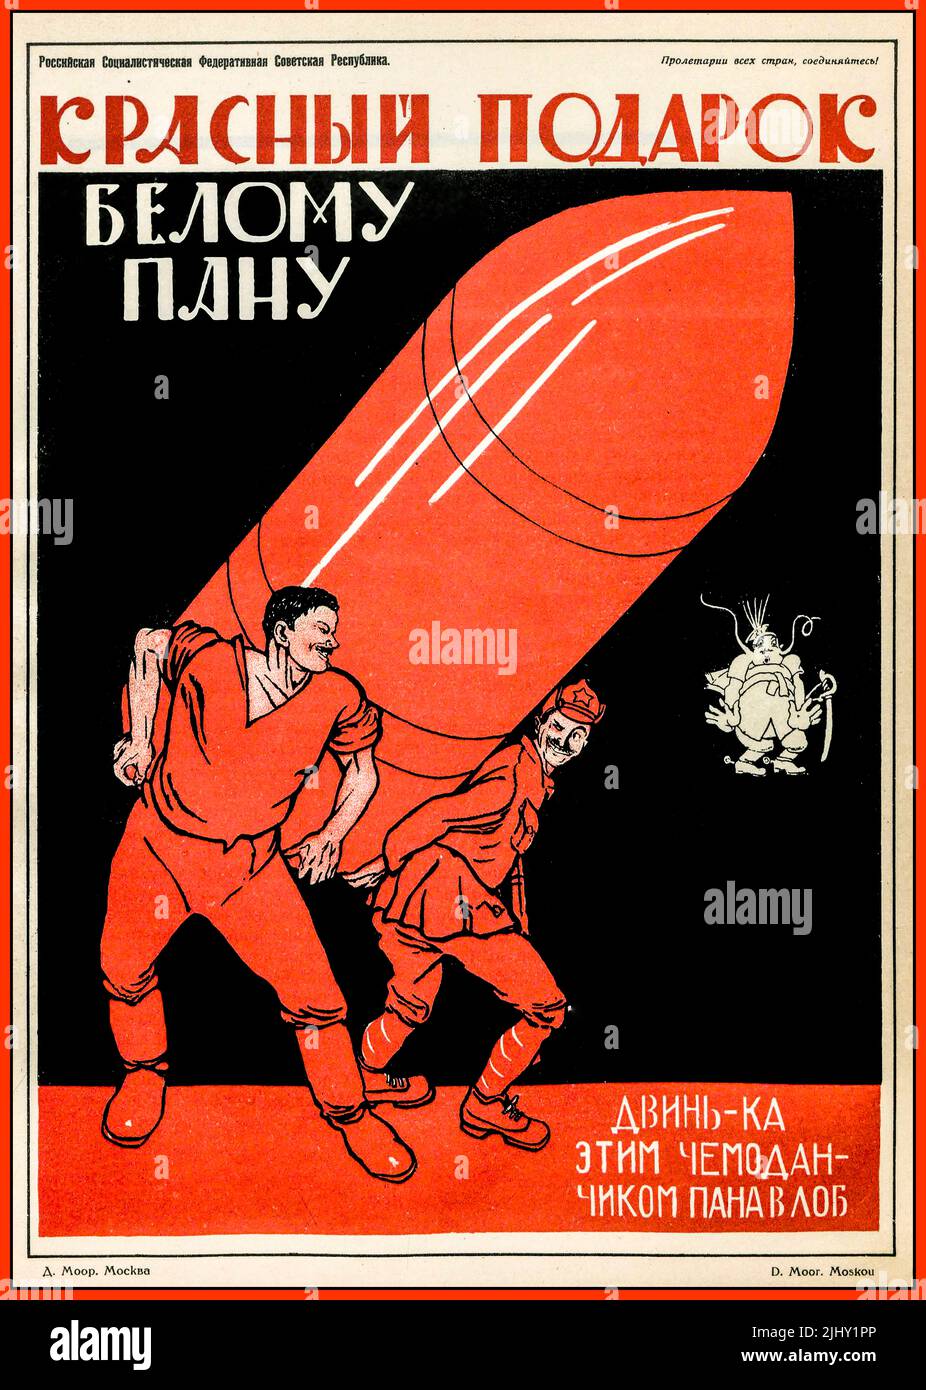 Un regalo rojo para un señor blanco (1920), un cartel de propaganda soviética de Dmitry Moor (1883-1946). Русский: Красный подарок белому пану. Двинь-ка этим чемоданчиком пана в лоб. Fecha 1920 Foto de stock